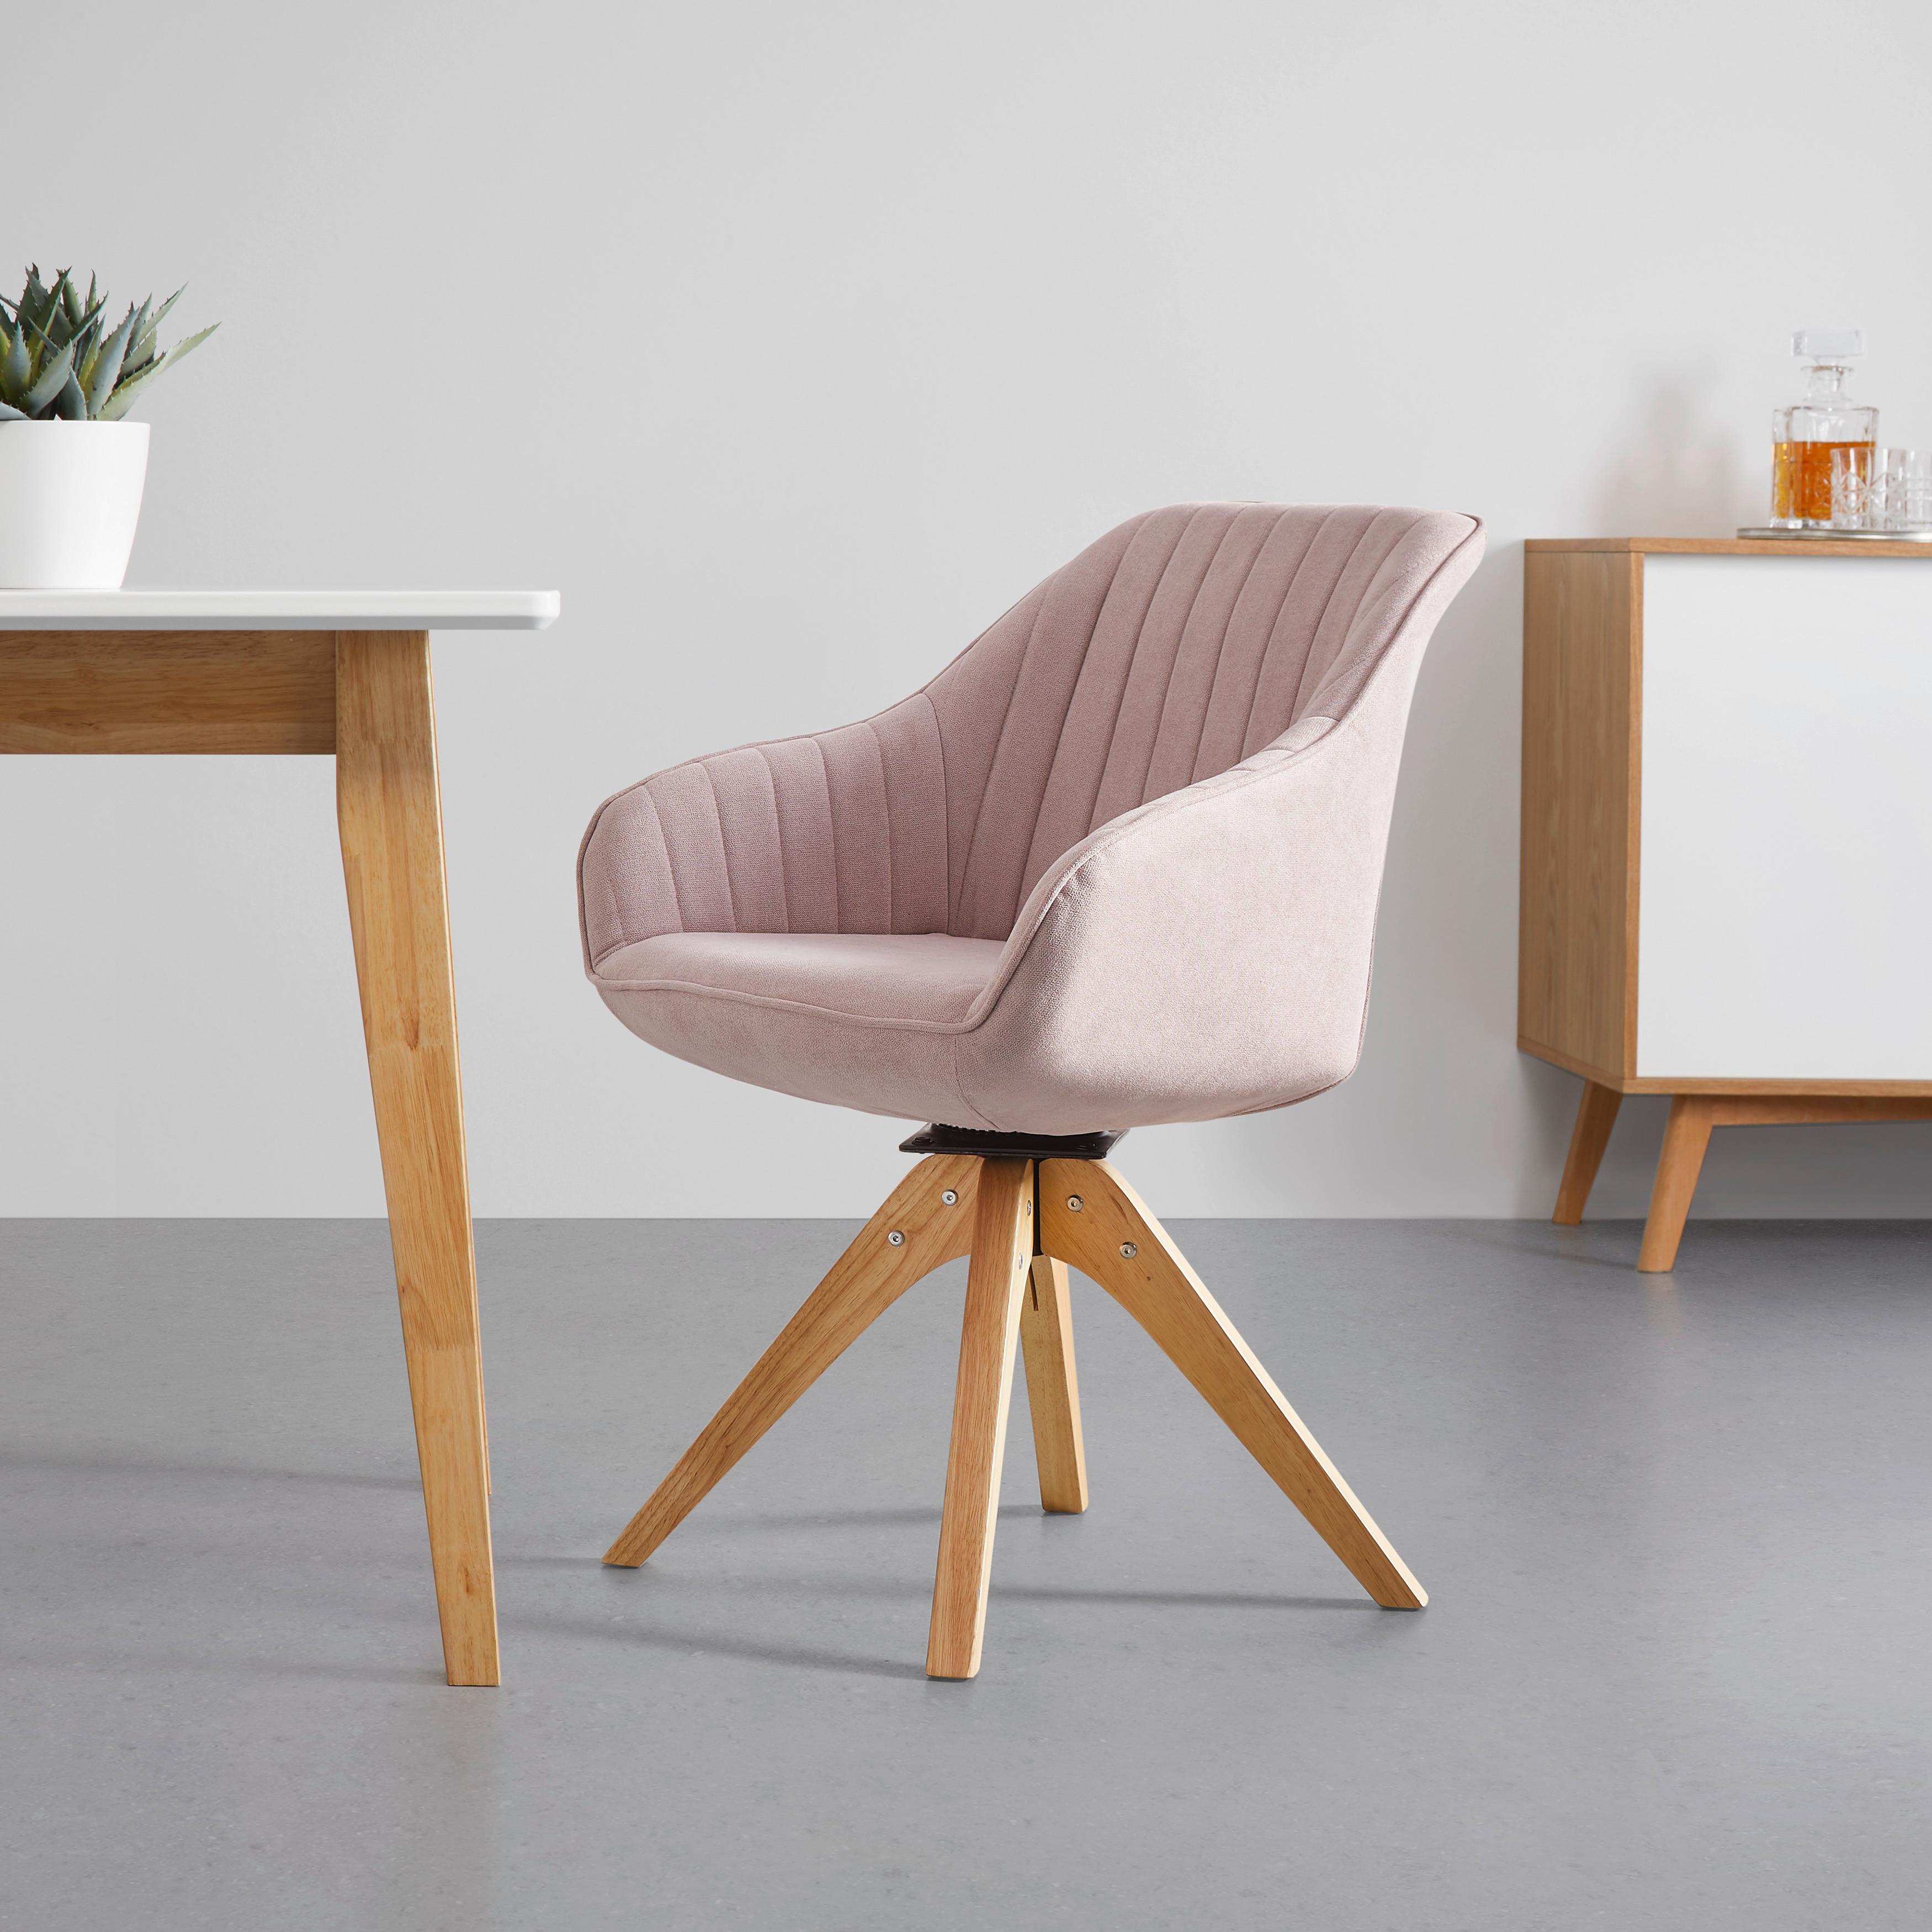 Jedálenská Stolička Leonie - farby dubu/ružová, Moderný, drevo/textil (60/84/61cm) - Modern Living